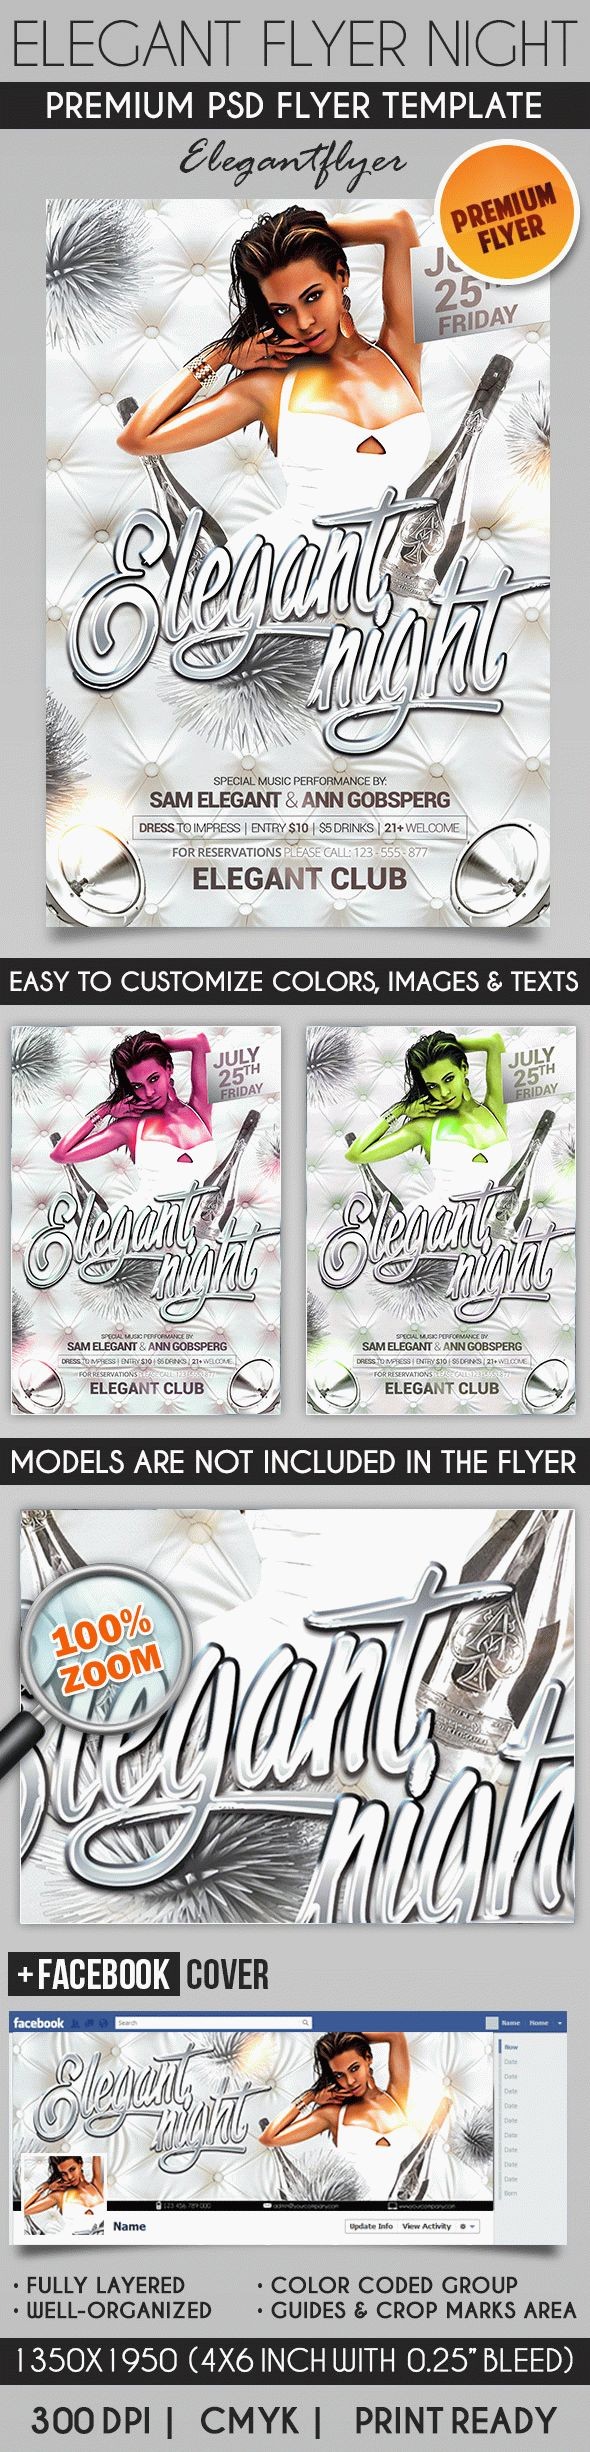 Elegant Flyer Night Vol.2 by ElegantFlyer